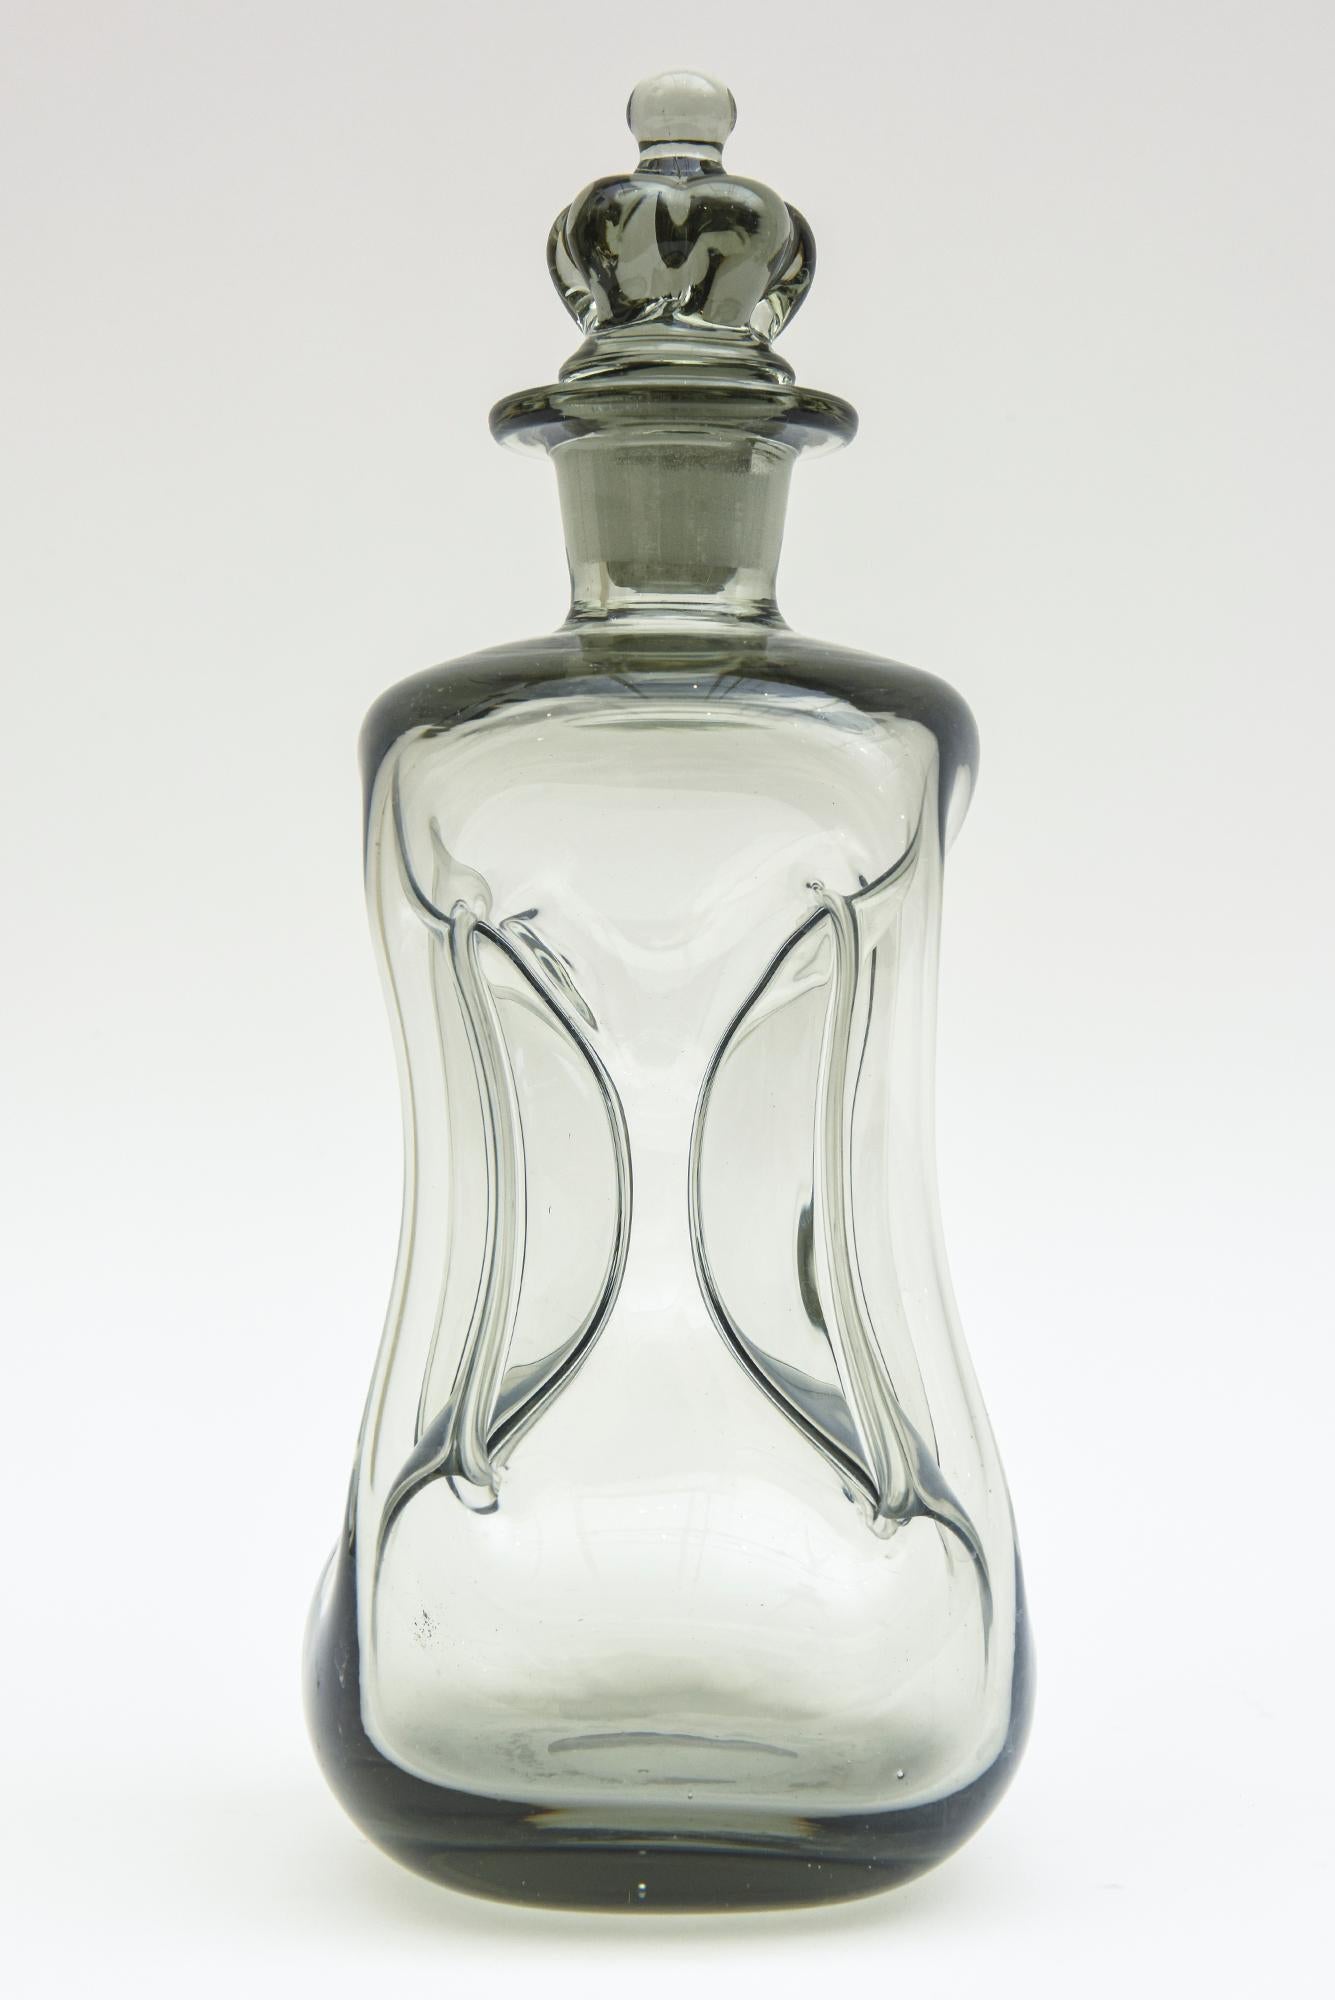 Diese Dekanterflasche aus mundgeblasenem Glas mit rauchgrauem Farbverlauf wurde von Michael Bang für Holmegaard entworfen. Sie wird Kluk Kluk genannt. Er war ein wichtiger Designer für das Unternehmen. Dies ist aus den 1960er Jahren. Das